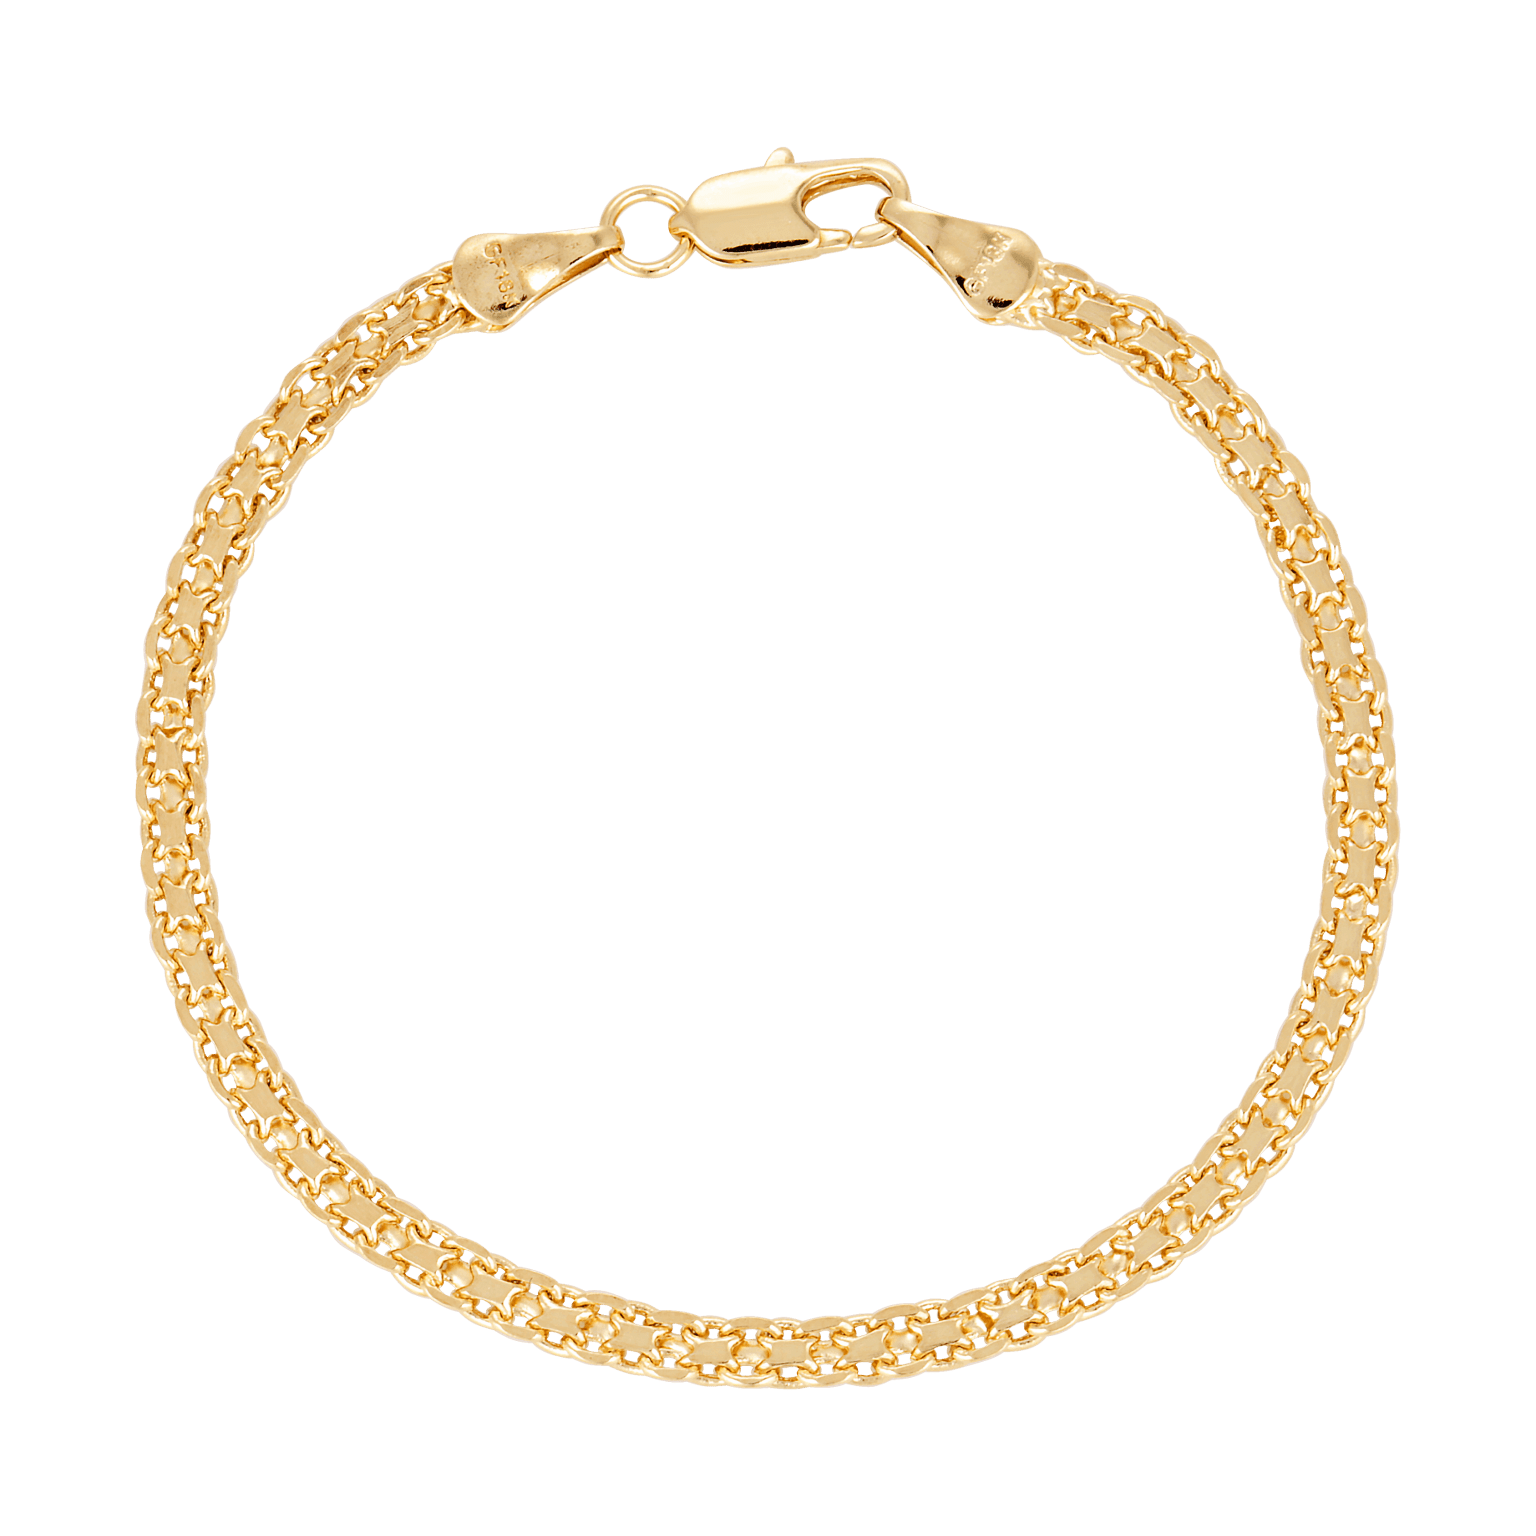 Maple Bracelet made from 18k gold fill 